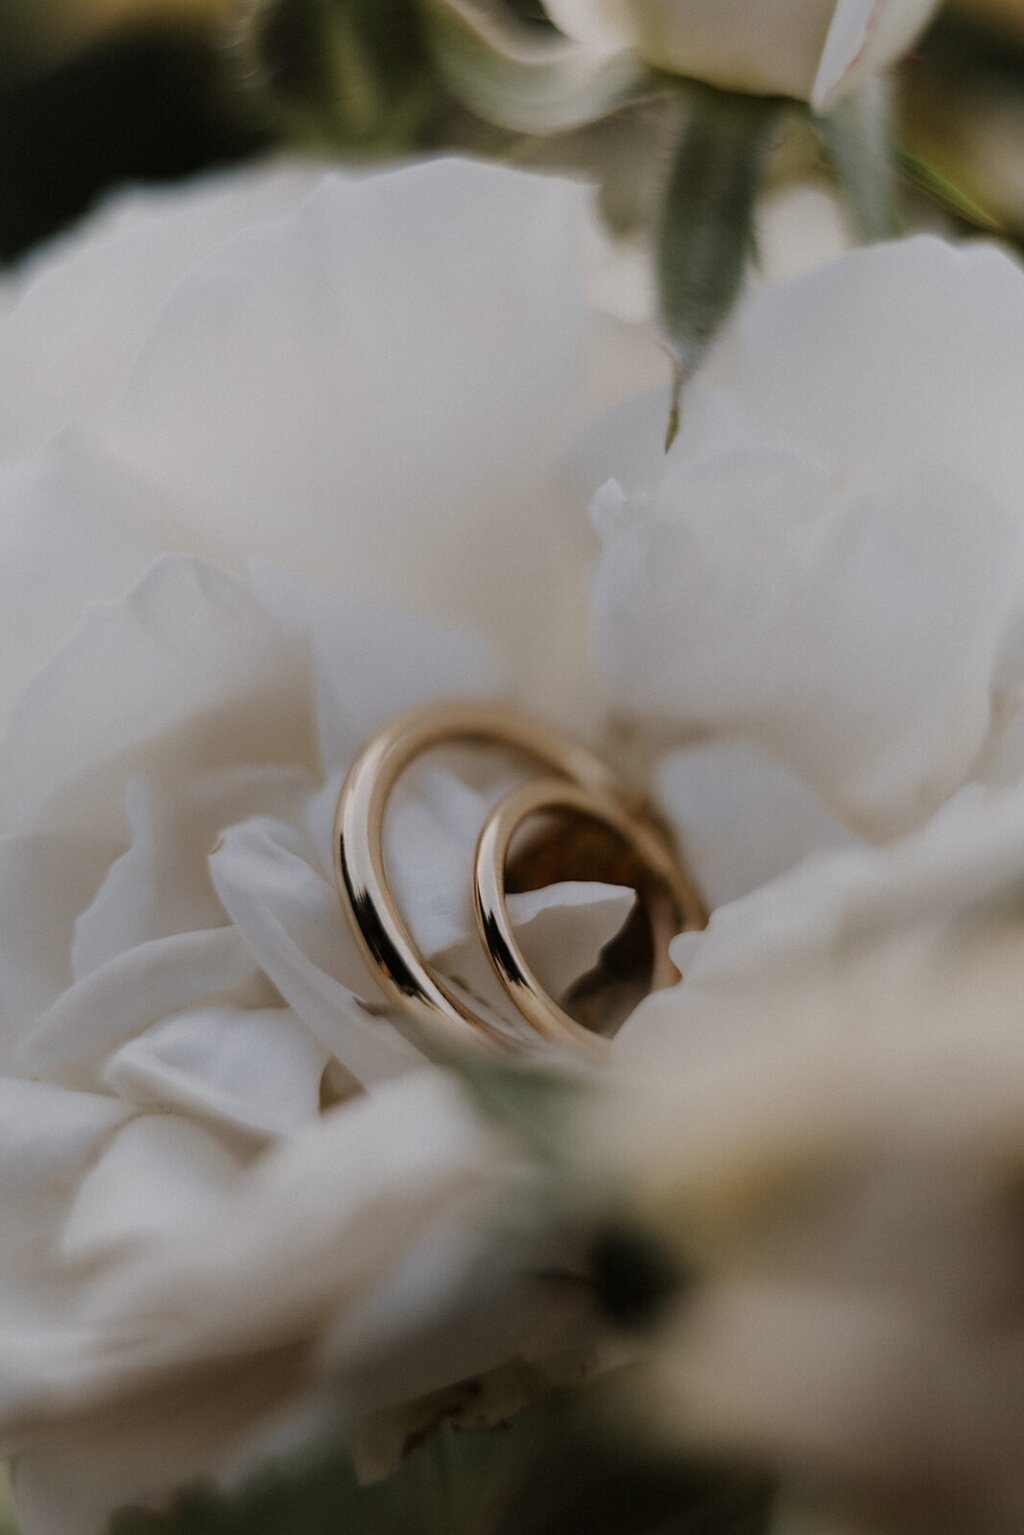 Zwei Goldene Hochzeitsringe in einer weißen Rose liegend sehr nah fotografiert.